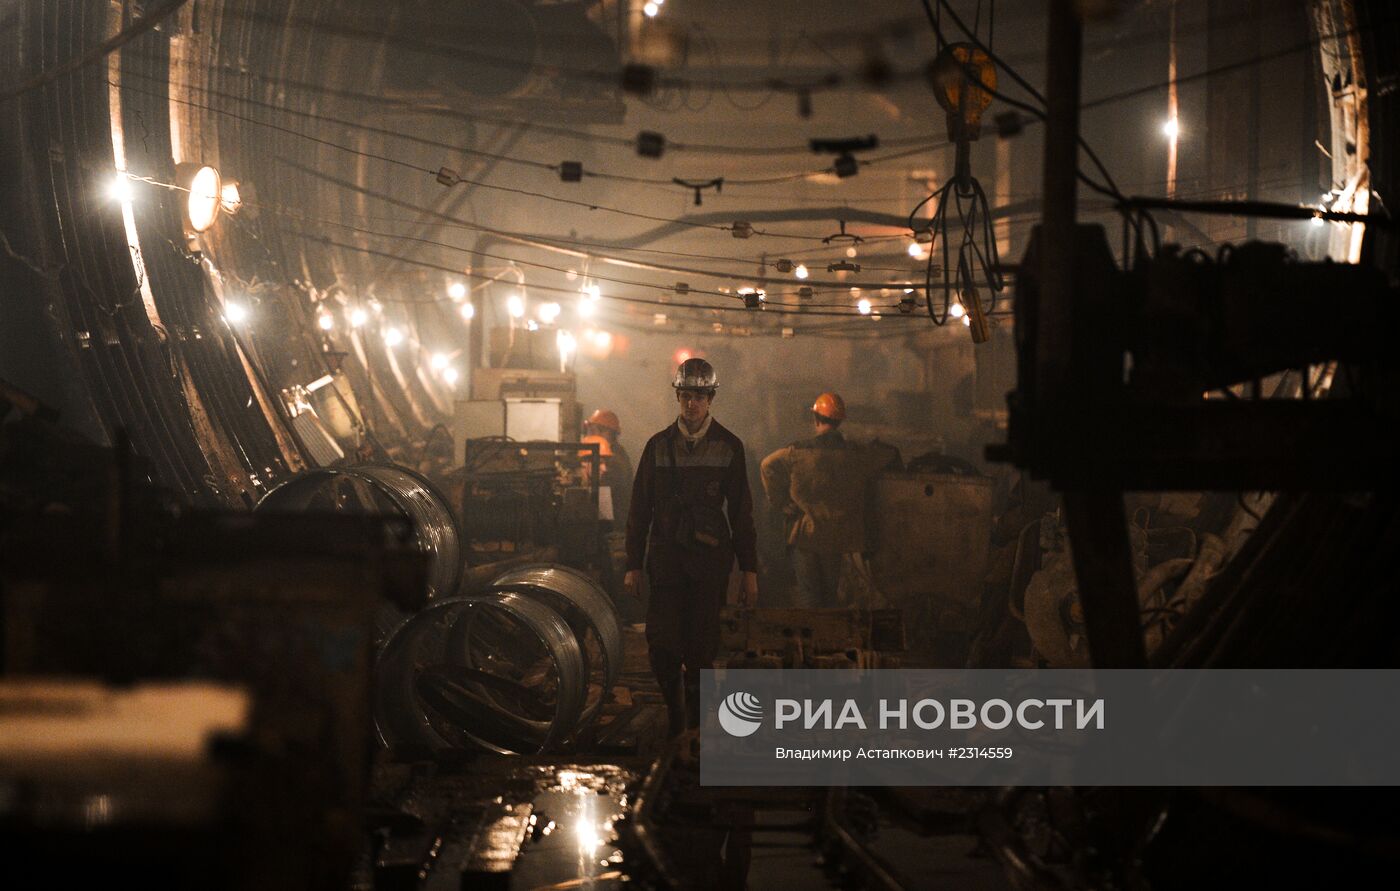 Строительство станции метрополитена "Петровская-Разумовская 2"